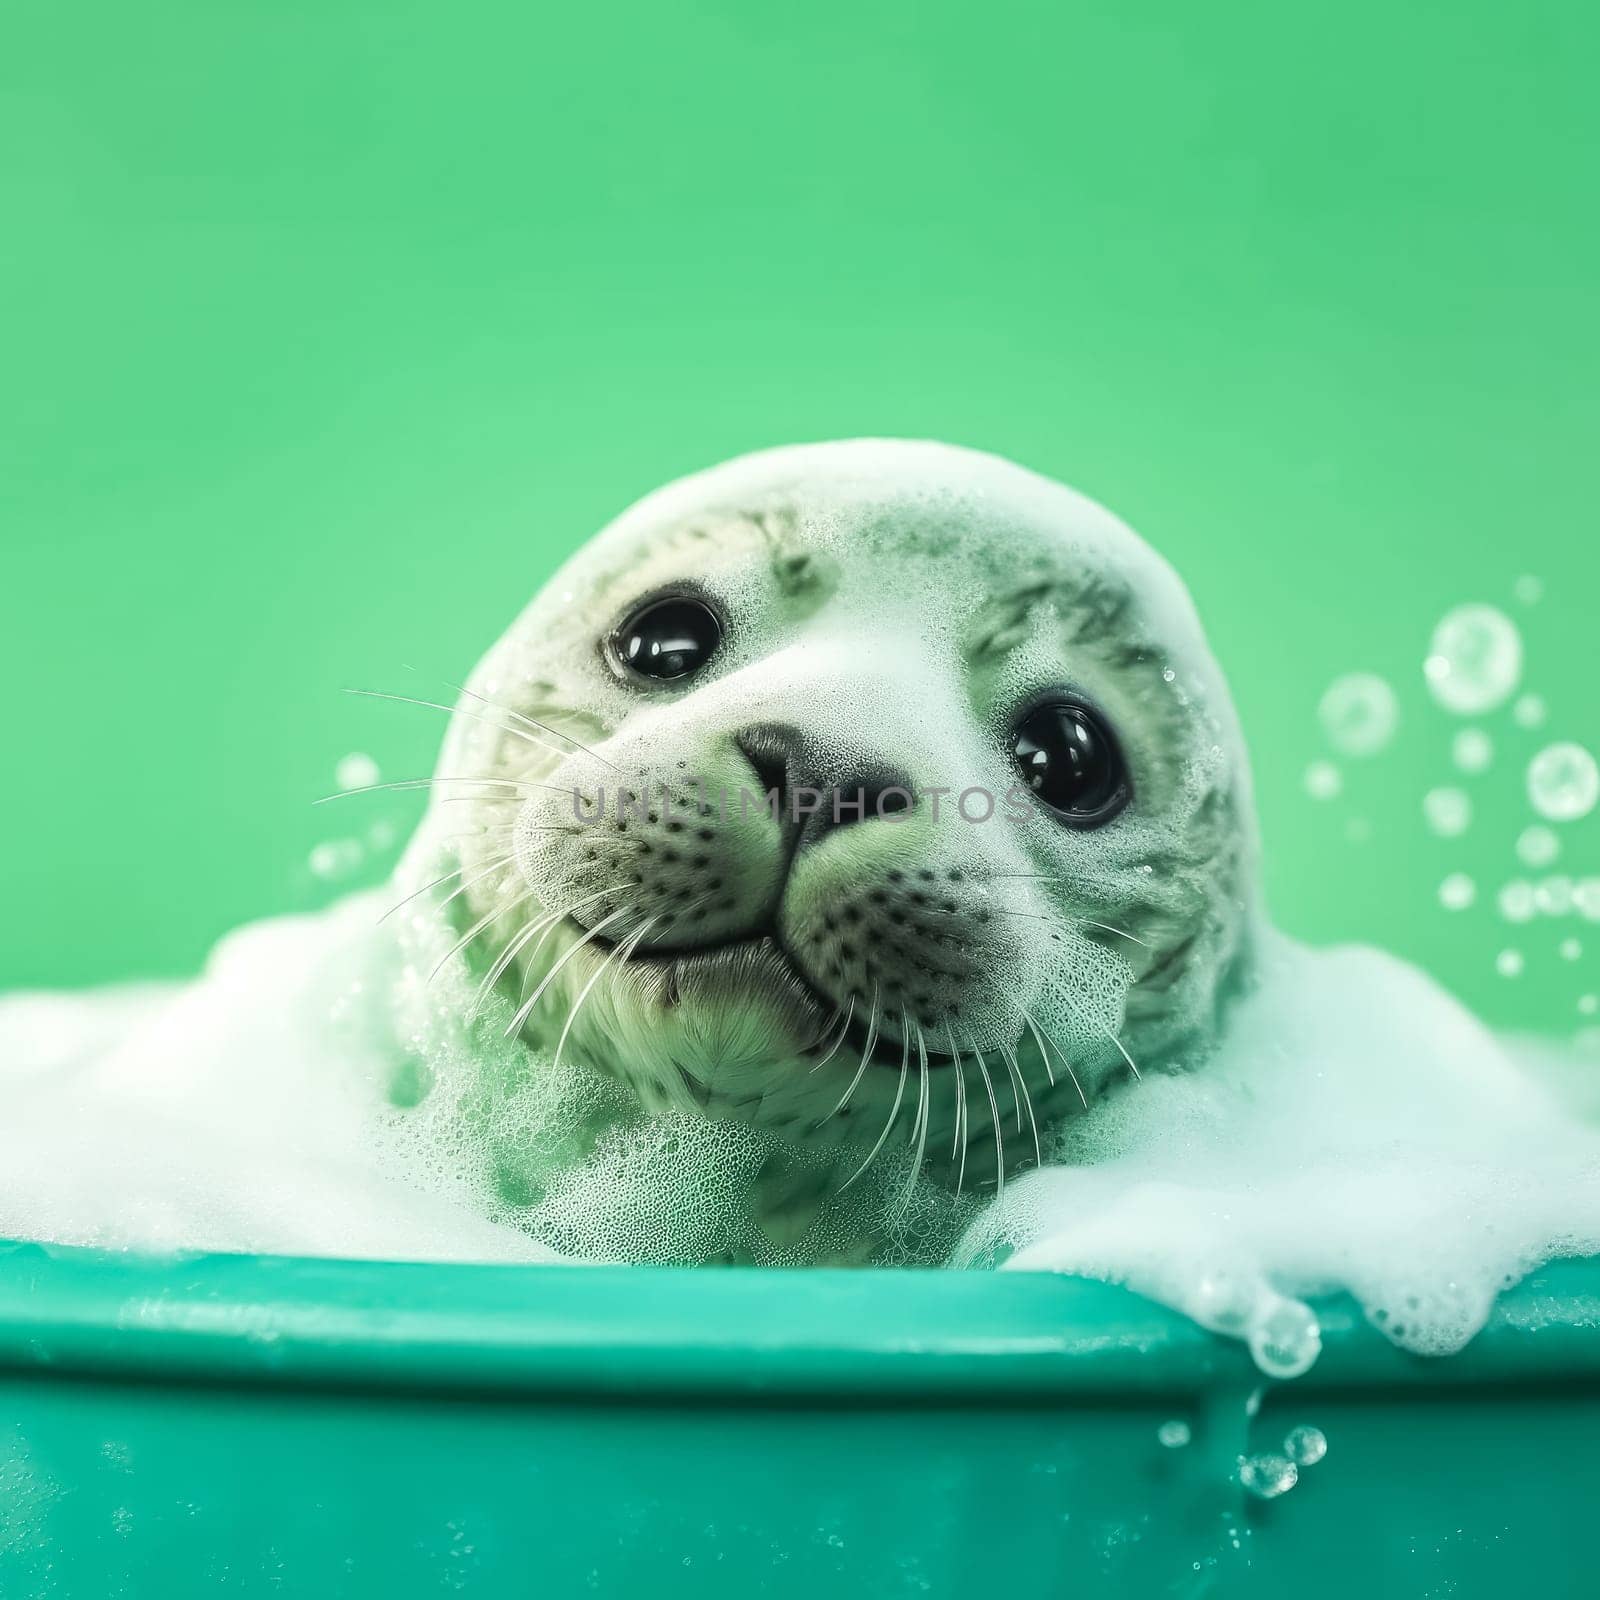 An adorable fur seal pup enjoys a bath by Alla_Morozova93